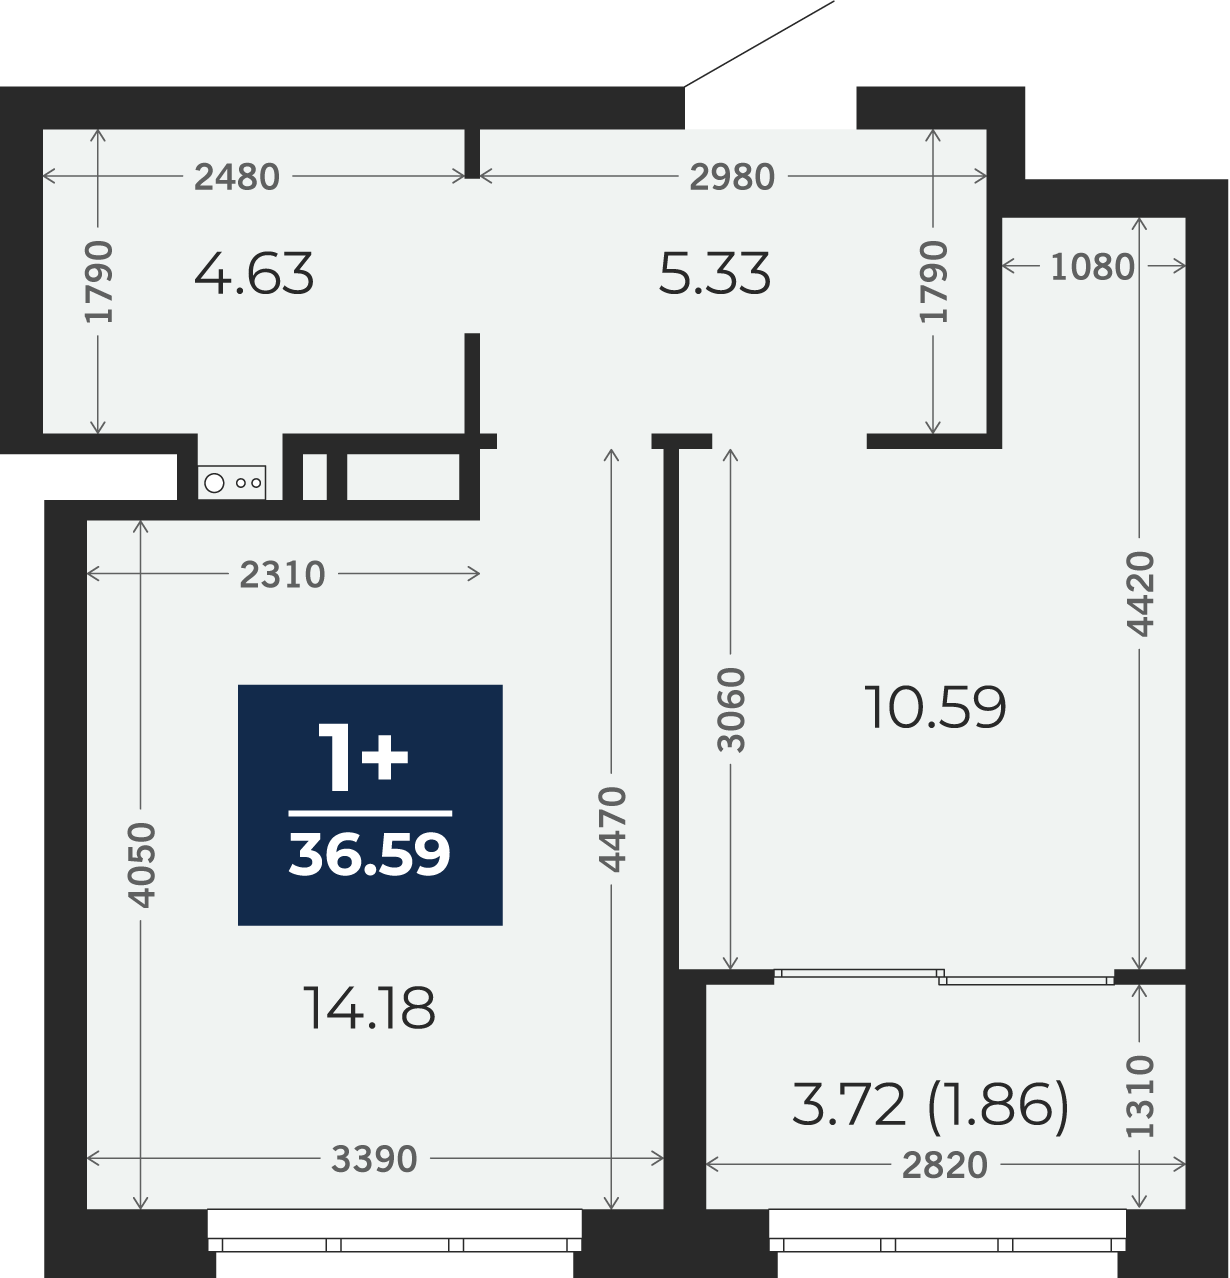 Квартира № 59, 1-комнатная, 36.59 кв. м, 5 этаж